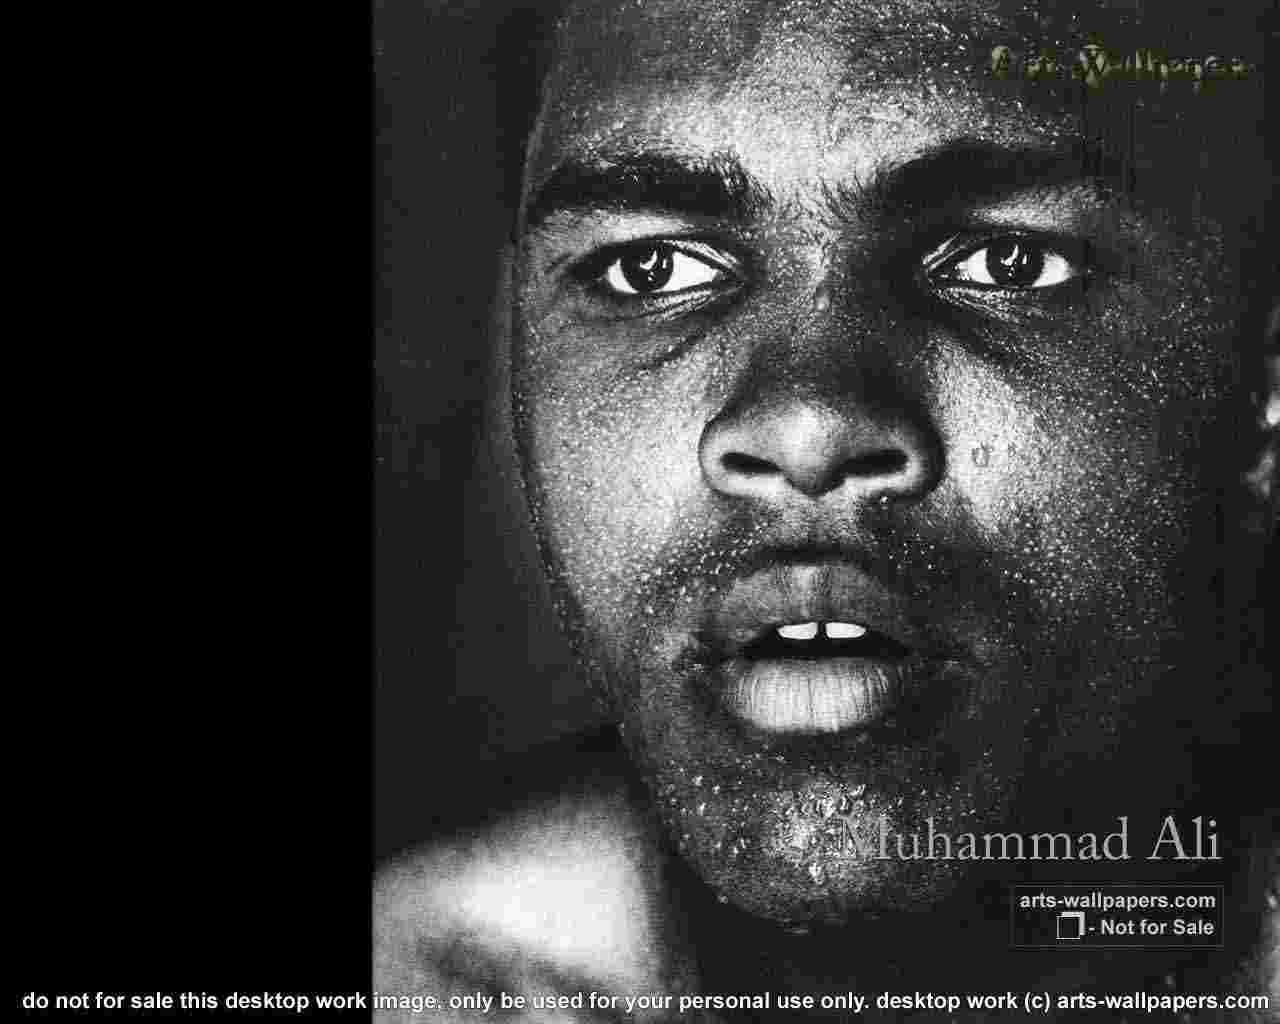 Muhammad Ali Wallpaper 1920x1080 1280x1024